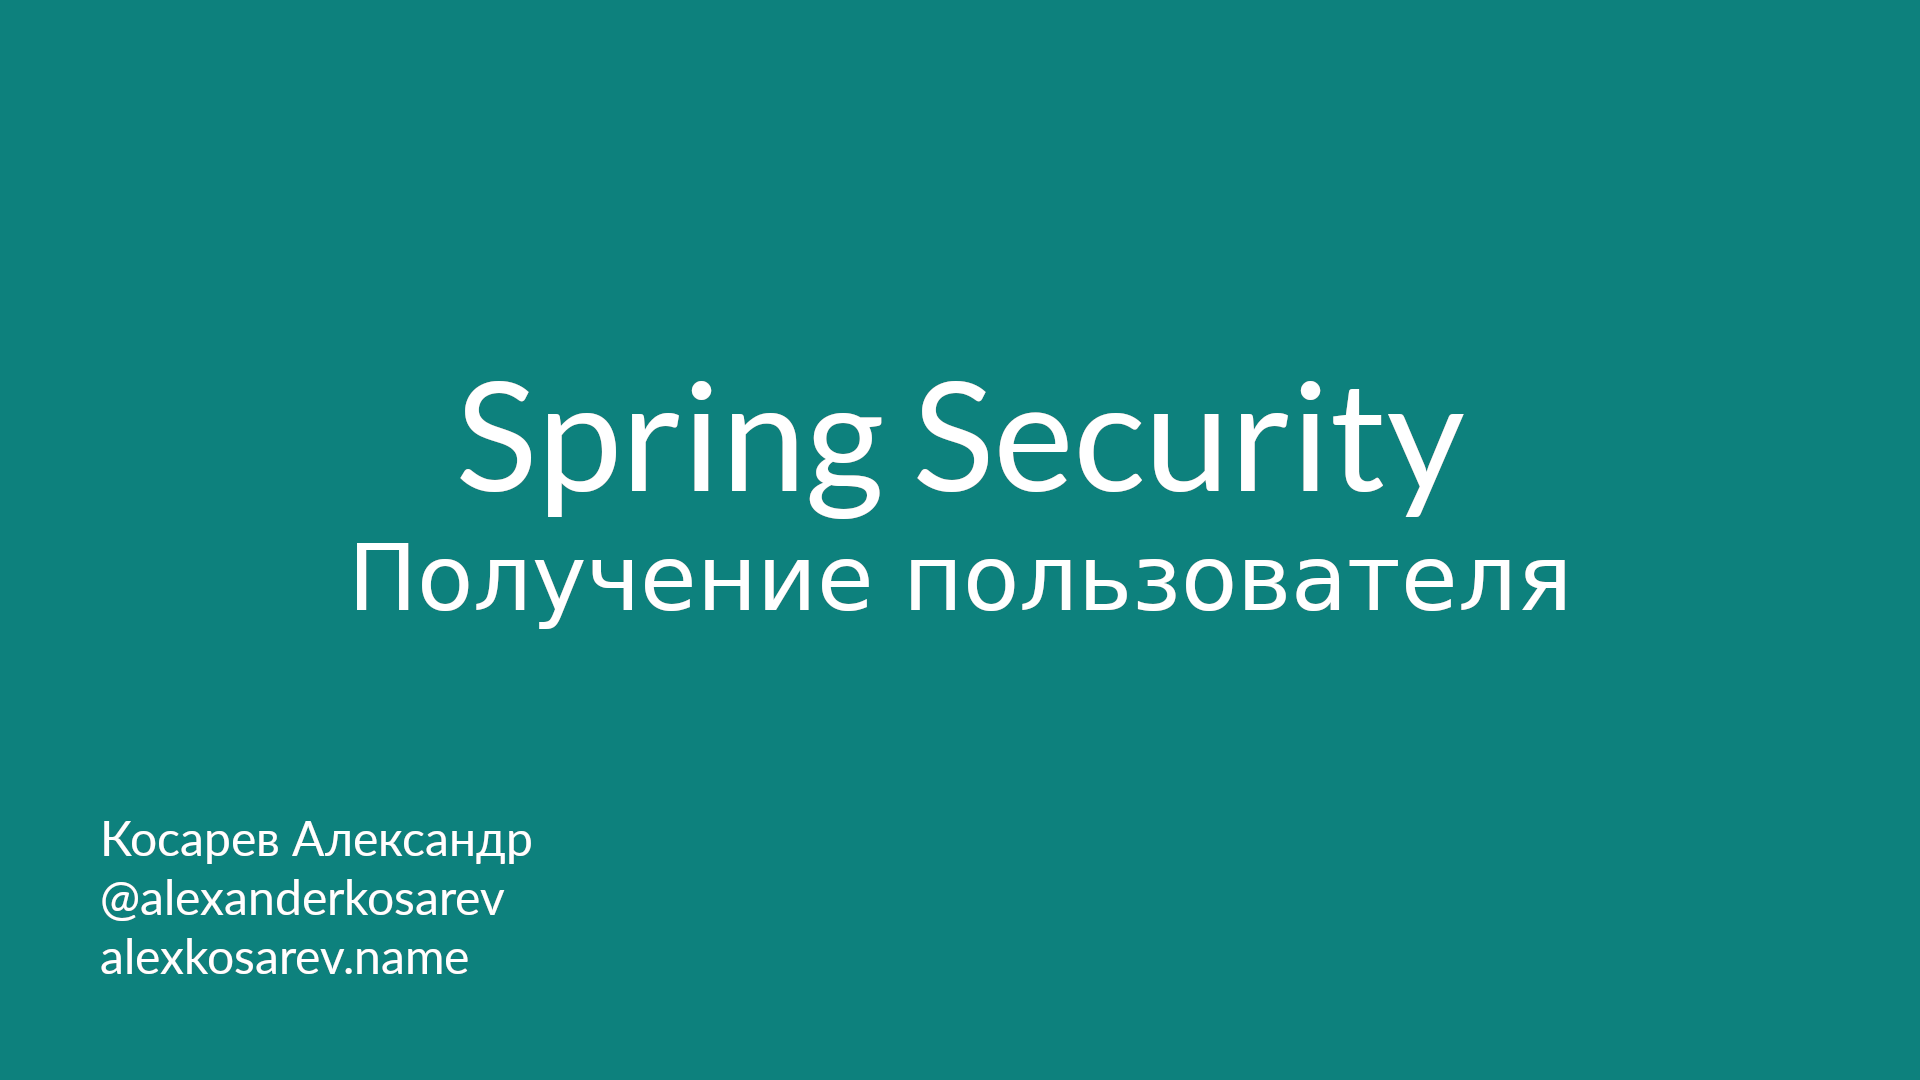 Получение информации о пользователе - Spring Security в деталях